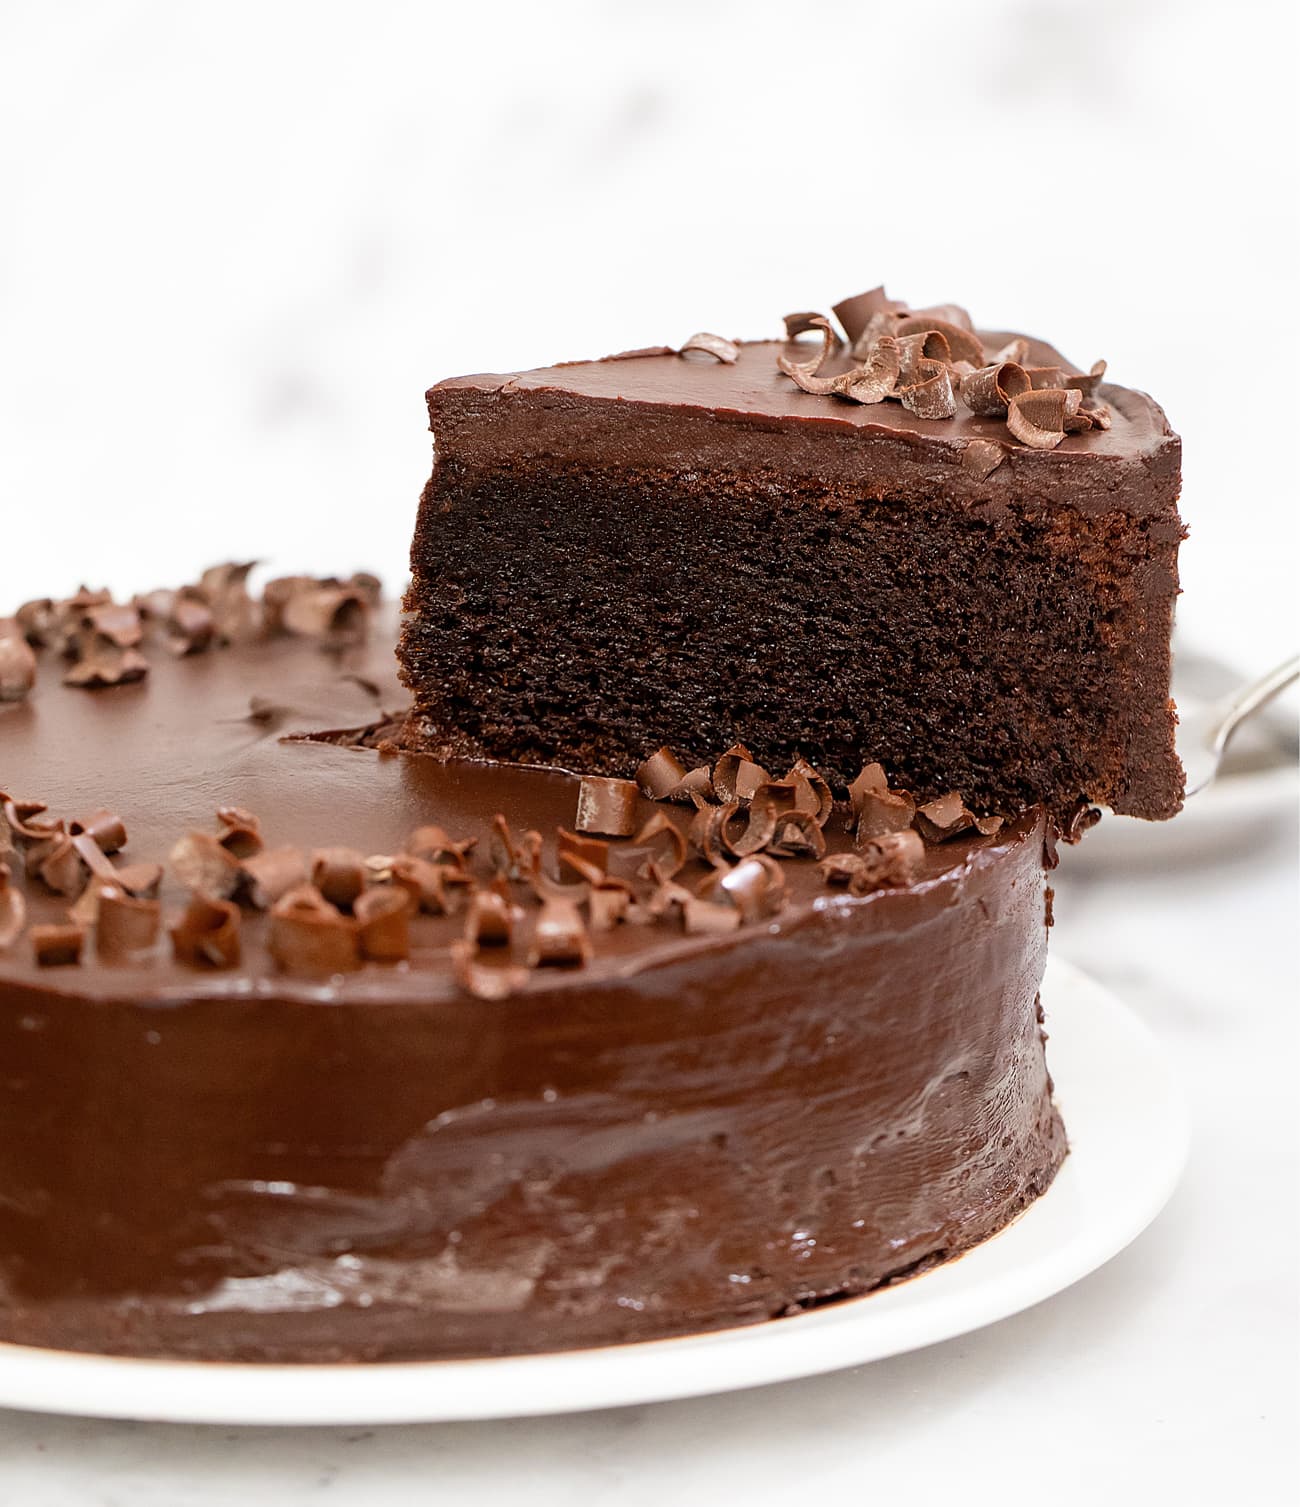 Ferrero rocher cake (chocolate hazelnut cake)